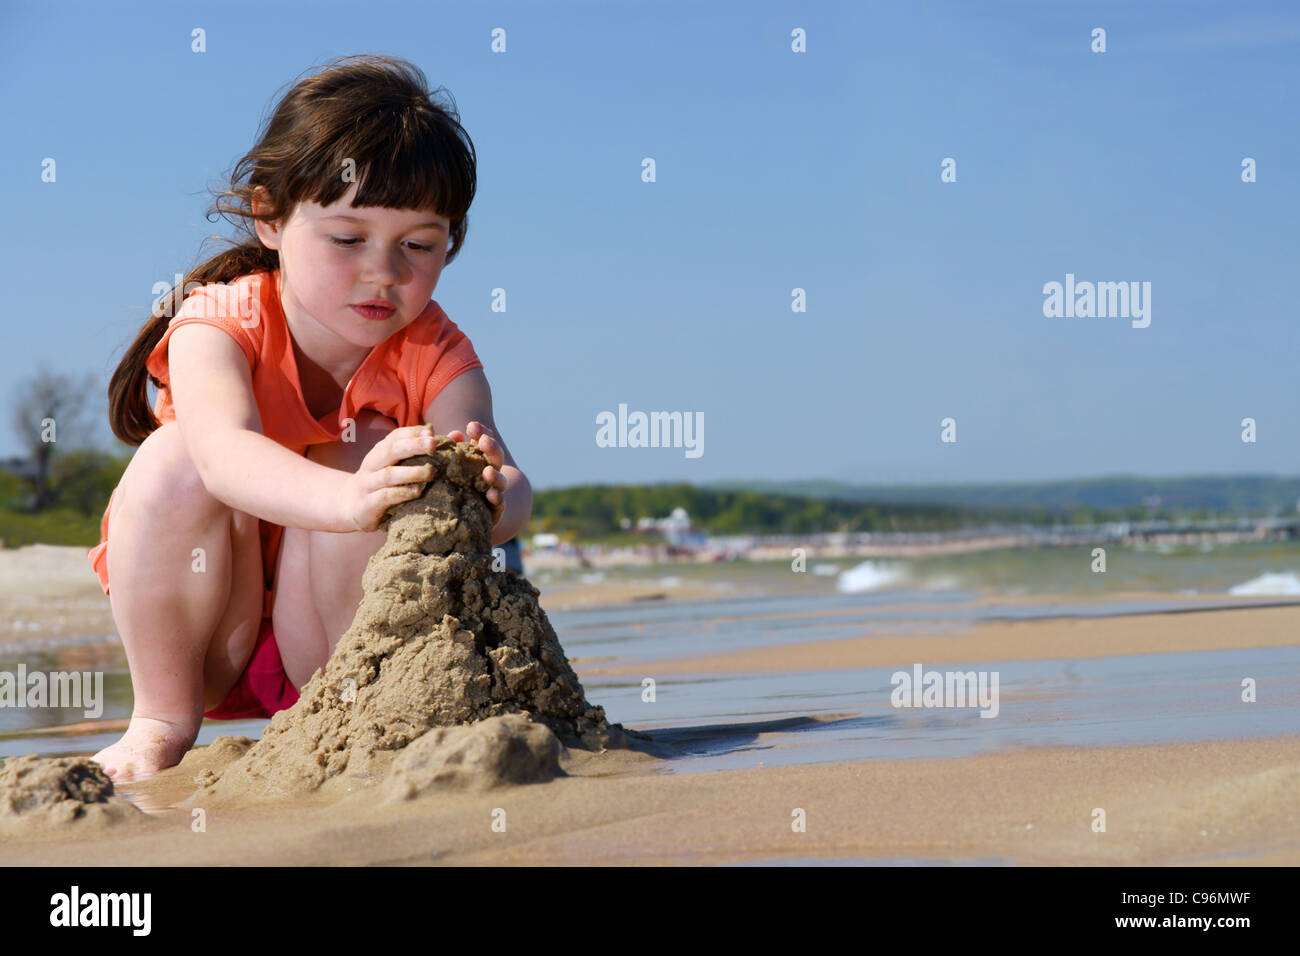 Kinder Am Strand Junge Mädchen Spielen In Den Sand Sandburgen Zu